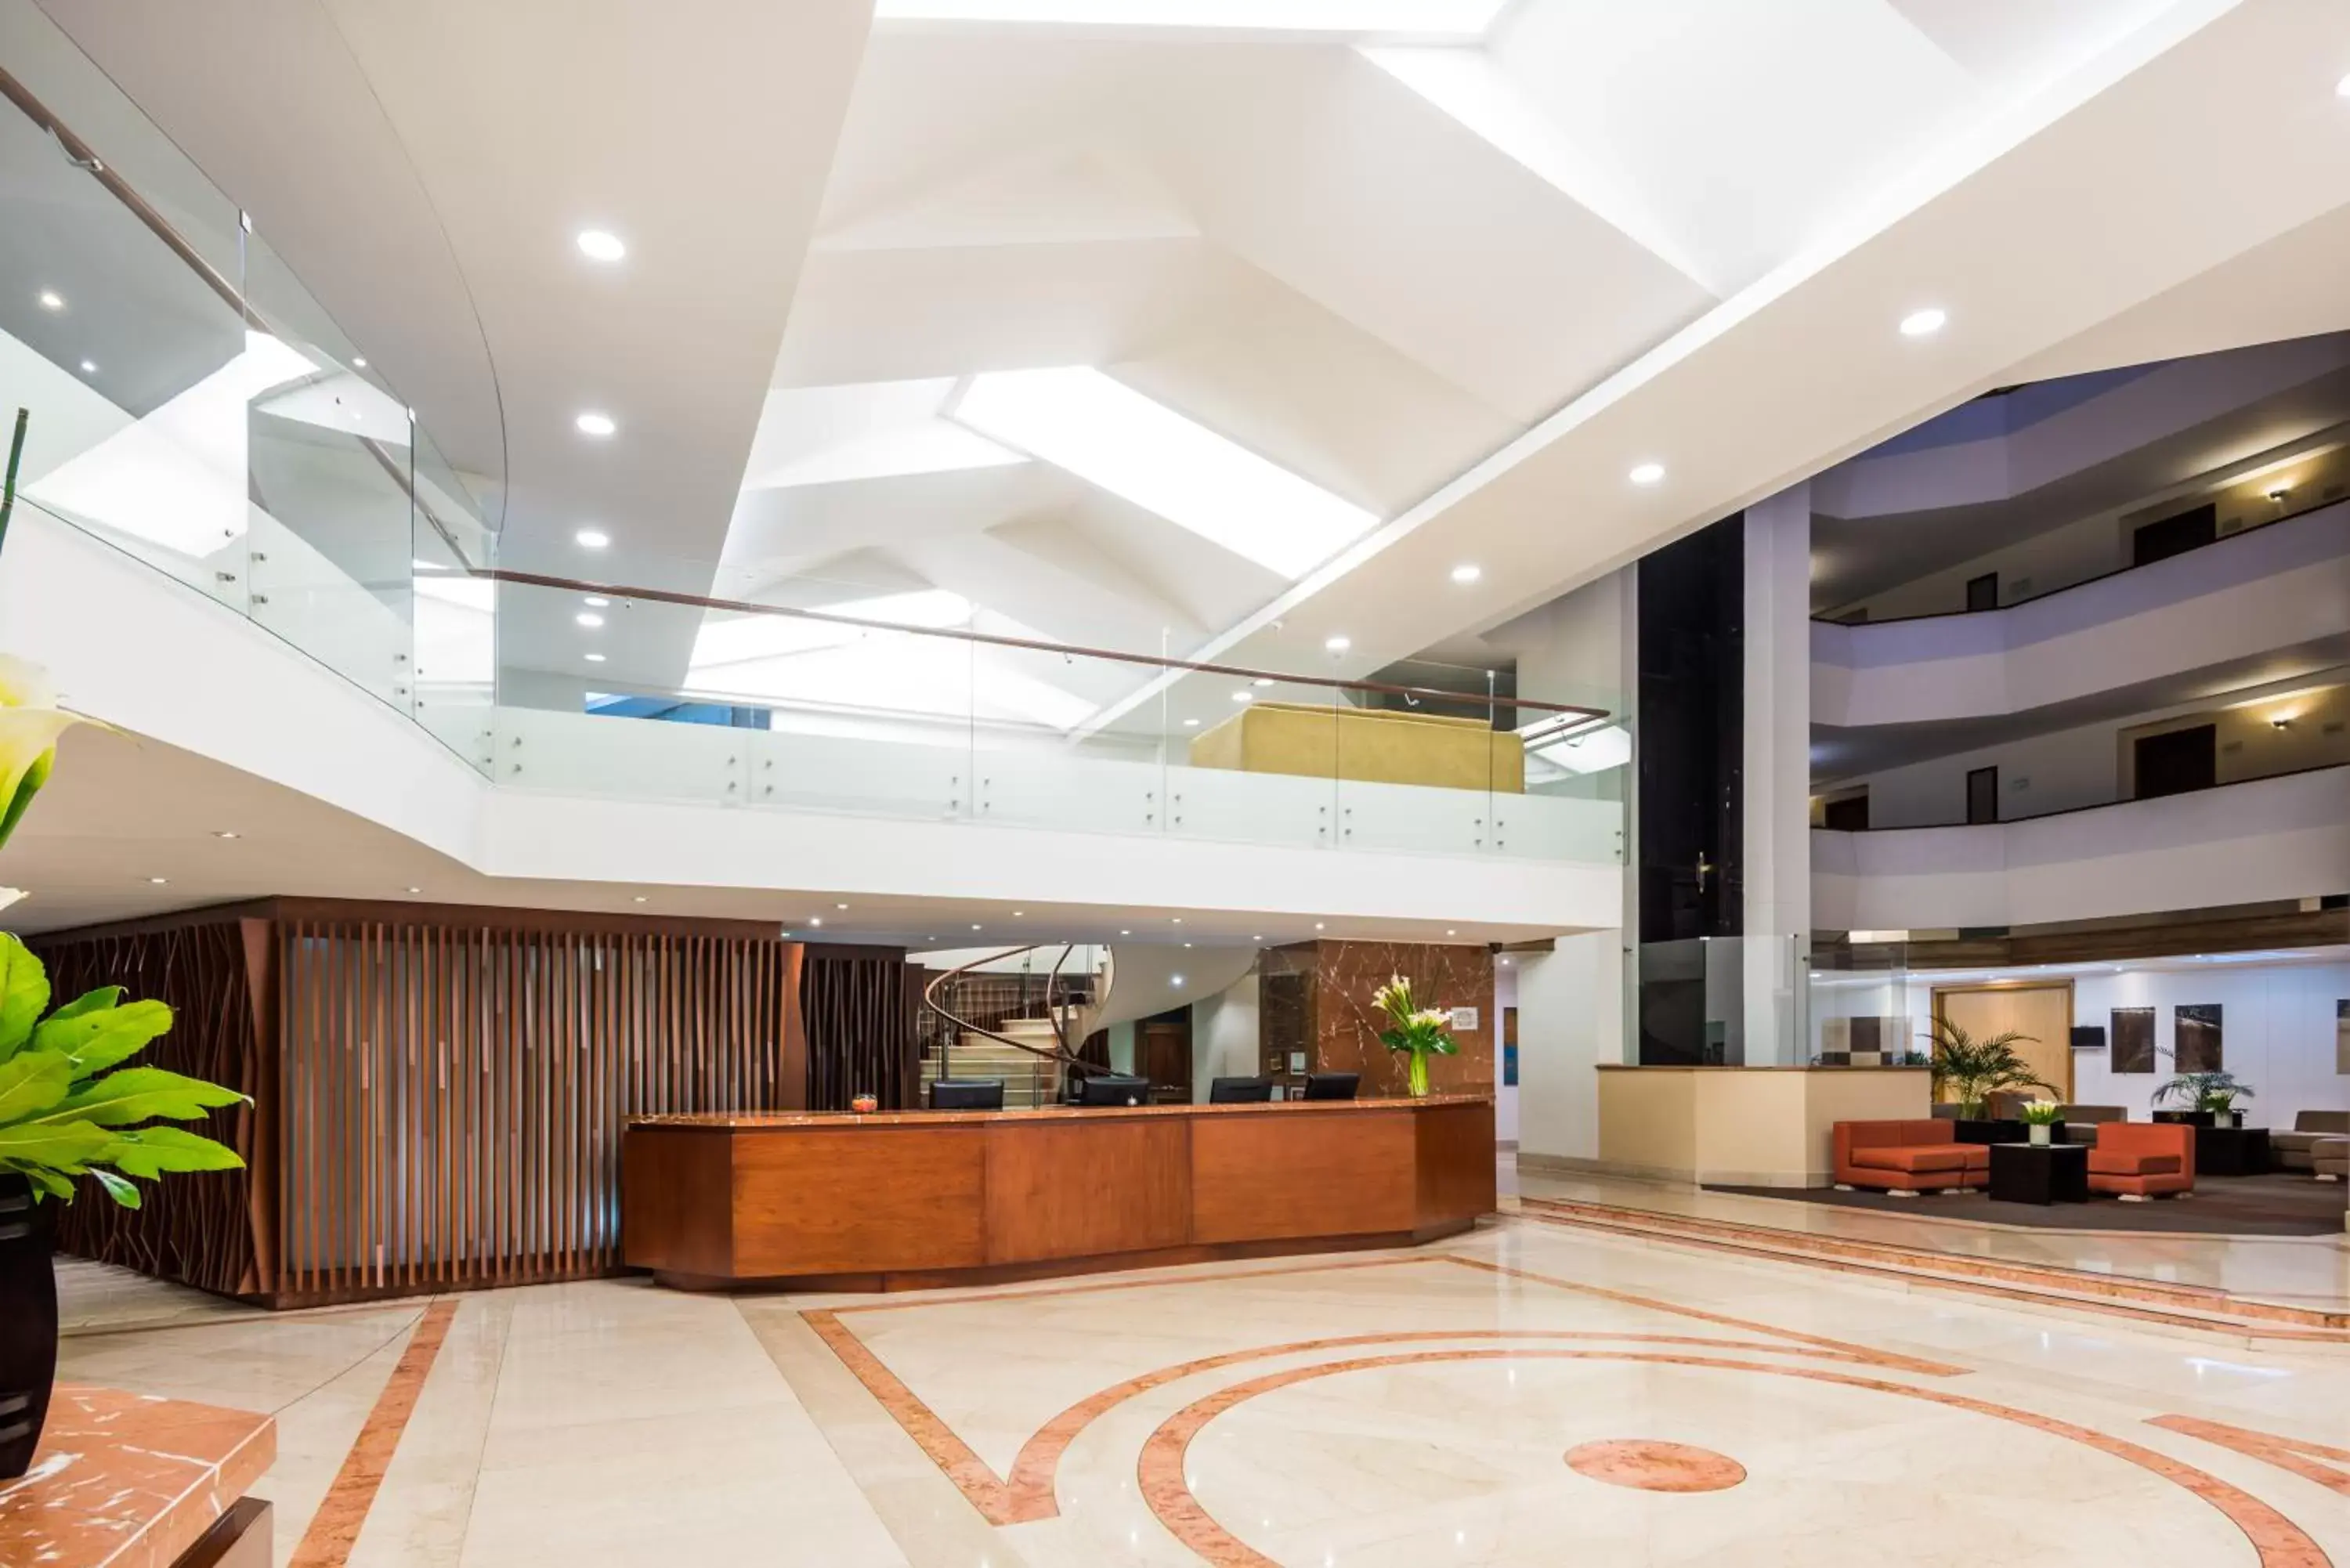 Lobby or reception, Lobby/Reception in Cosmos 100 Hotel & Centro de Convenciones - Hoteles Cosmos